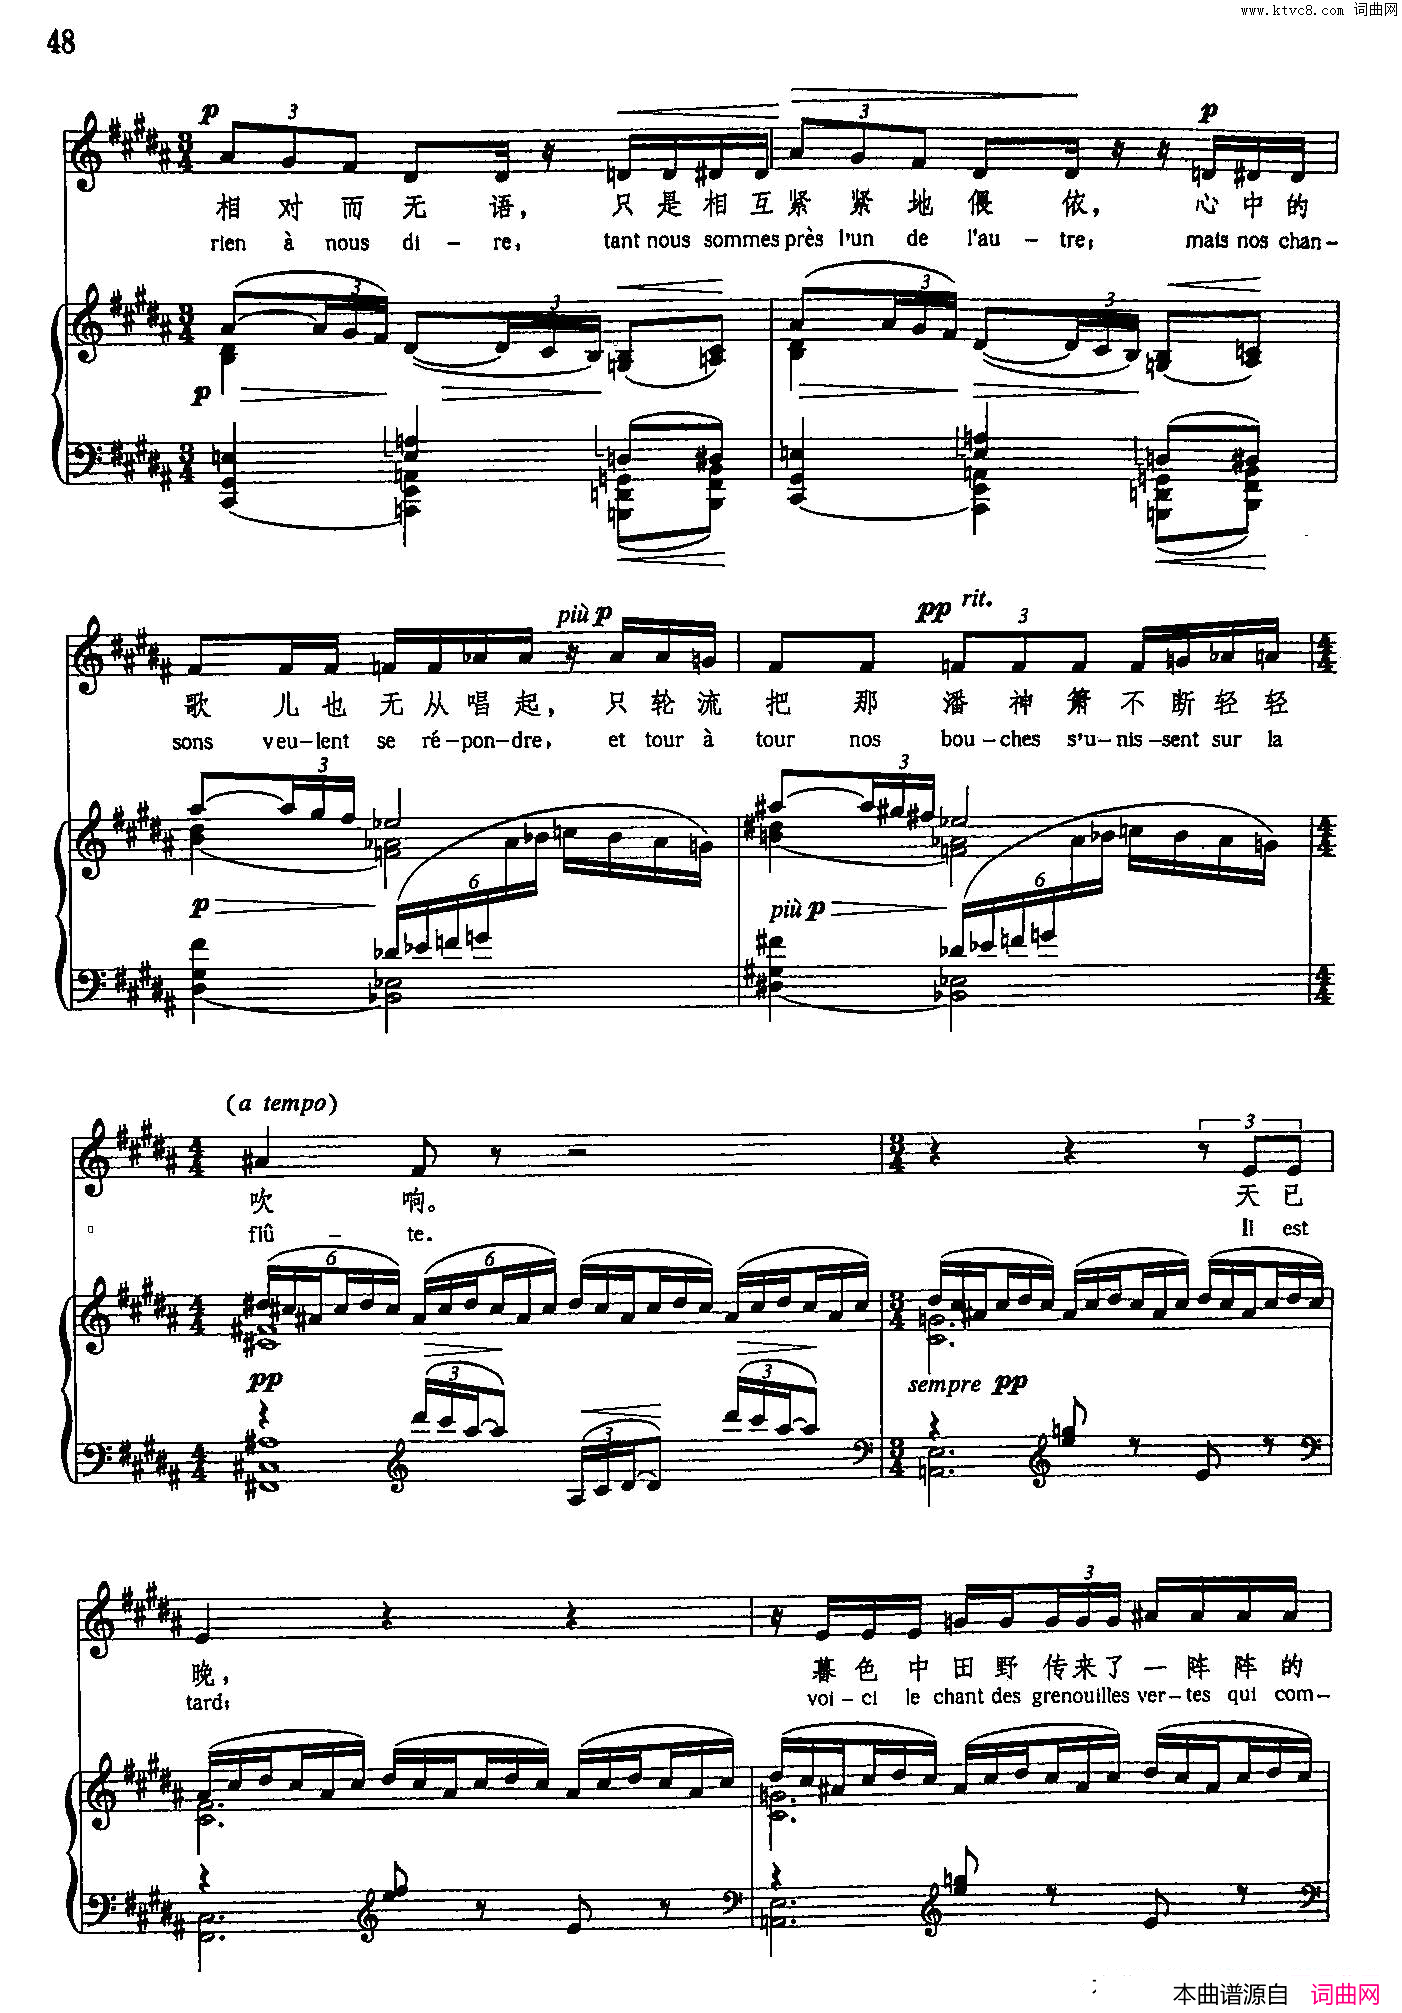 潘神箫声乐教学曲库5_9正谱_选自歌剧_比利蒂斯_之一简谱